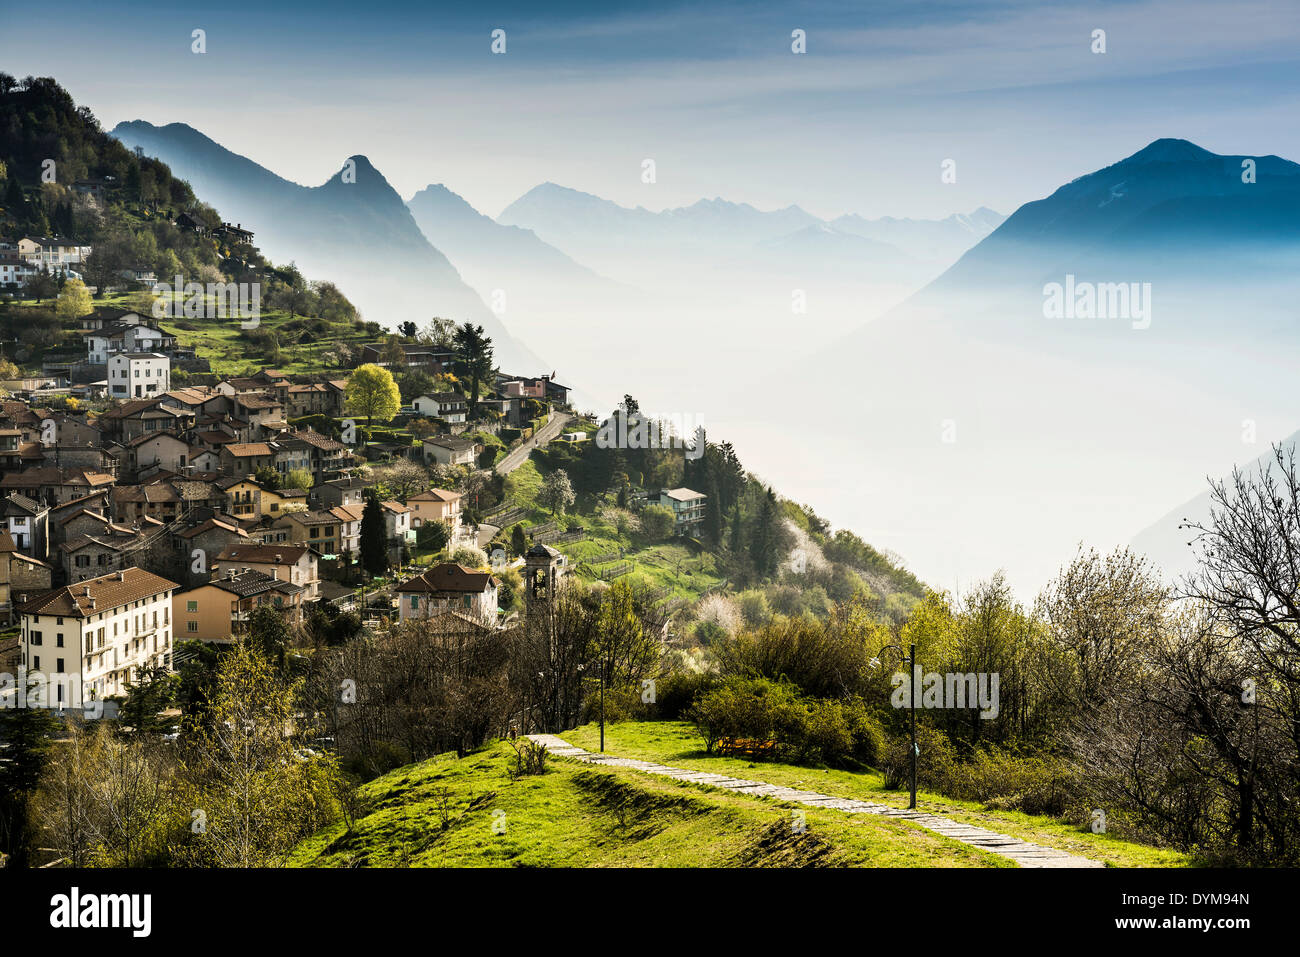 Village de Brè, Monte Brè, Lugano, Lac de Lugano, lago di Lugano, Tessin, Suisse Banque D'Images